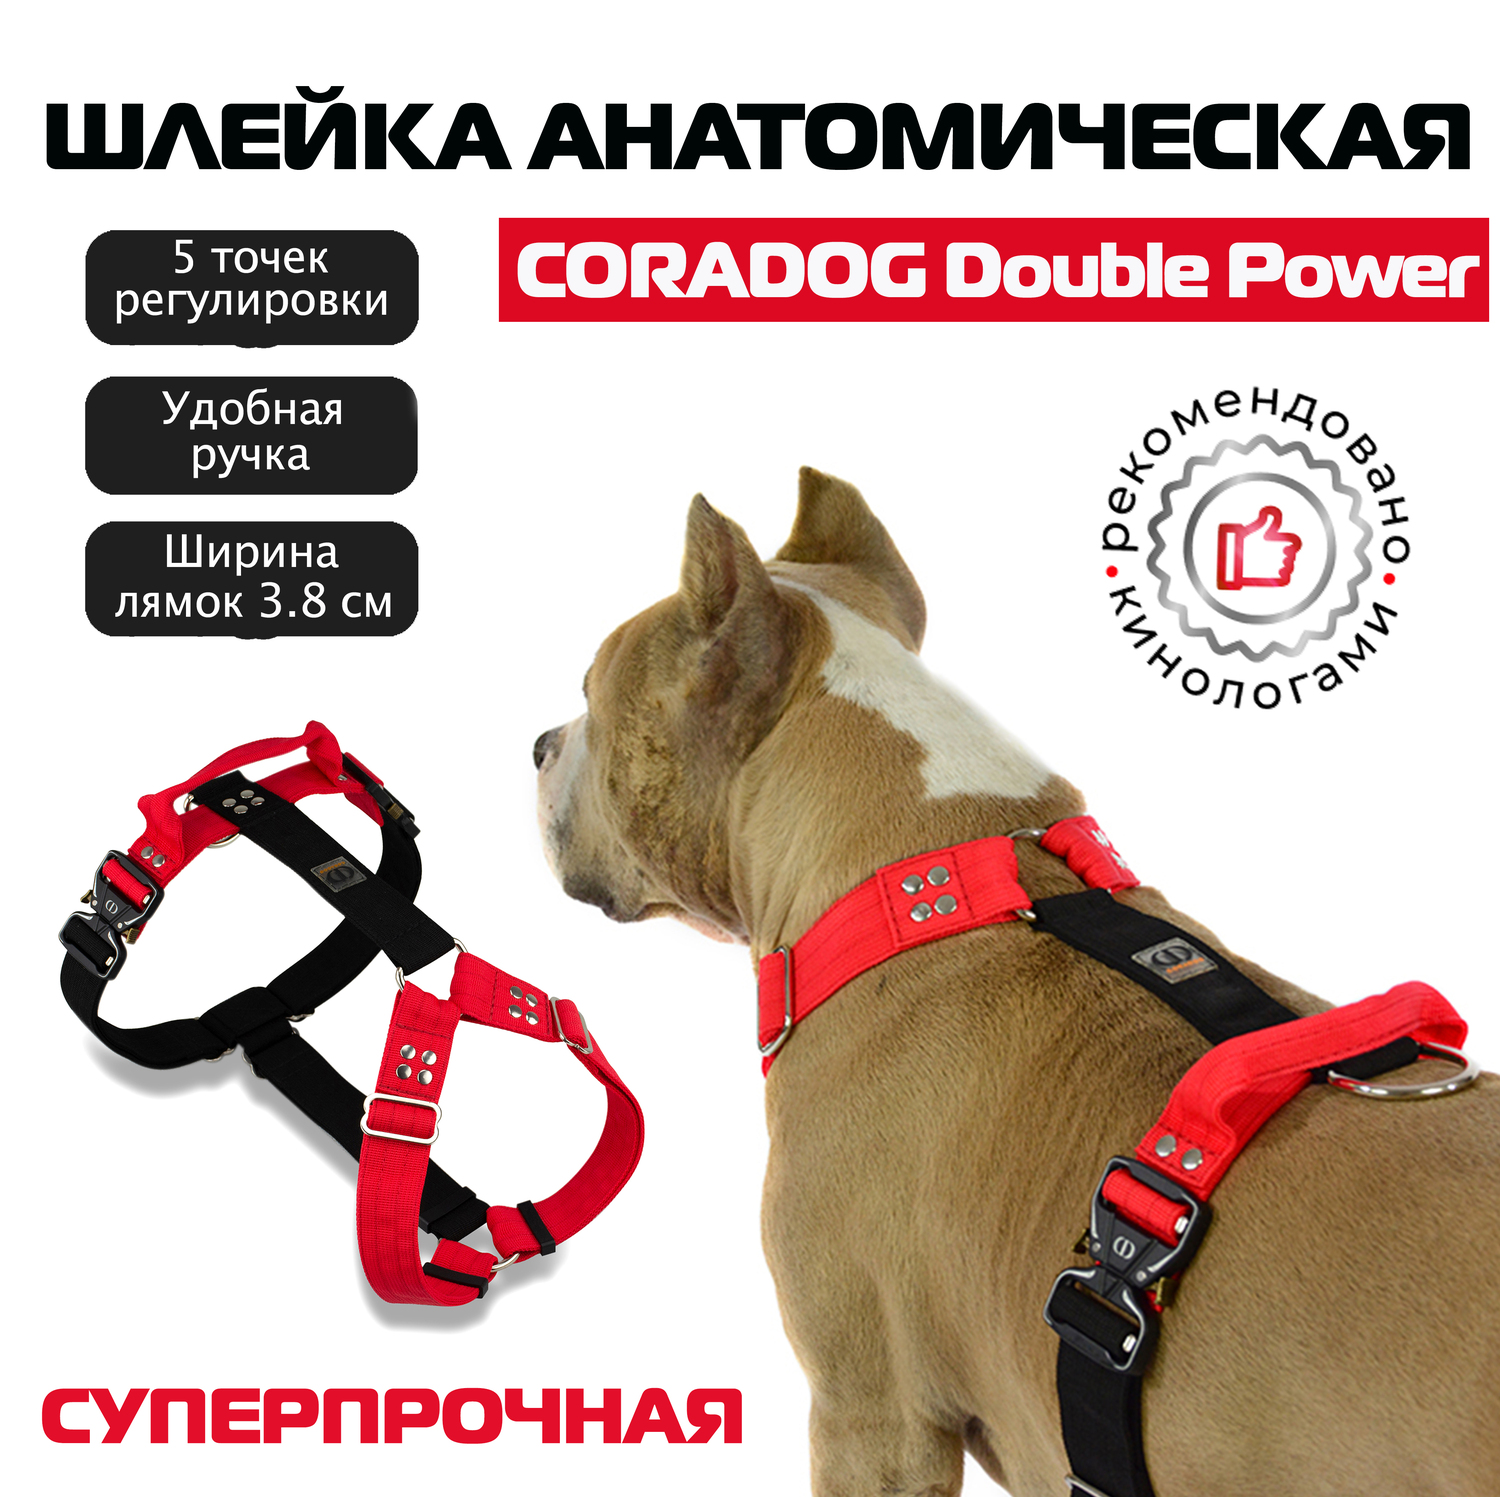 Шлейка с ручкой для собак прогулочная анатомическая, для ЗКС, тренировок, CORADOG Double Power цвет красный, черный